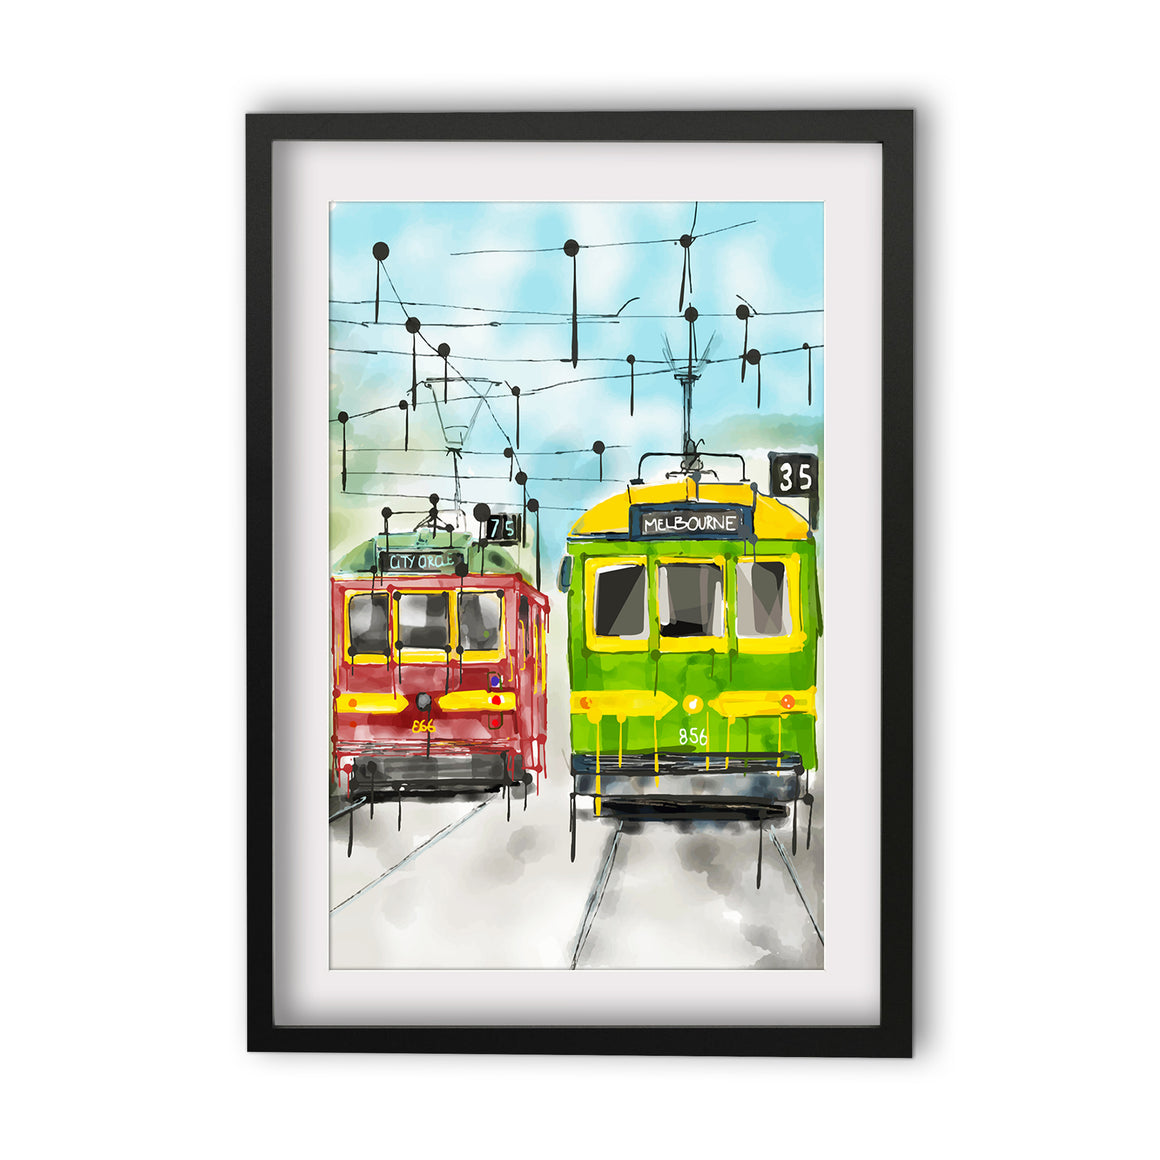 Print (Iconic) - Melbourne Trams (Portrait)